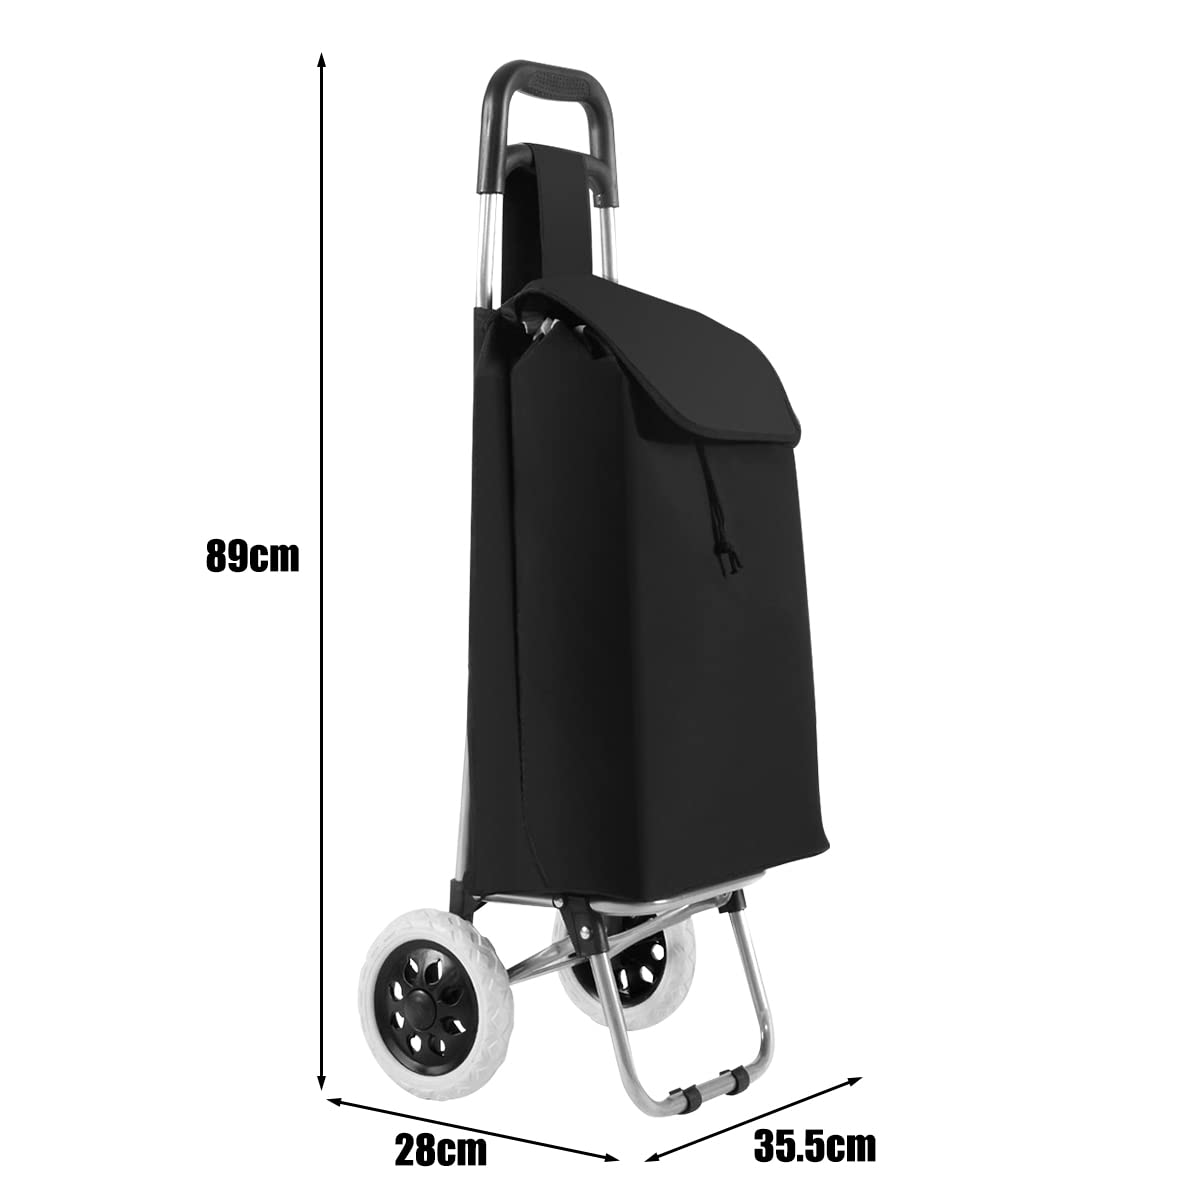 Giantex Folding Shopping Cart Foldable Shopping Trolley Bag w/ 2 Swivel Wheels